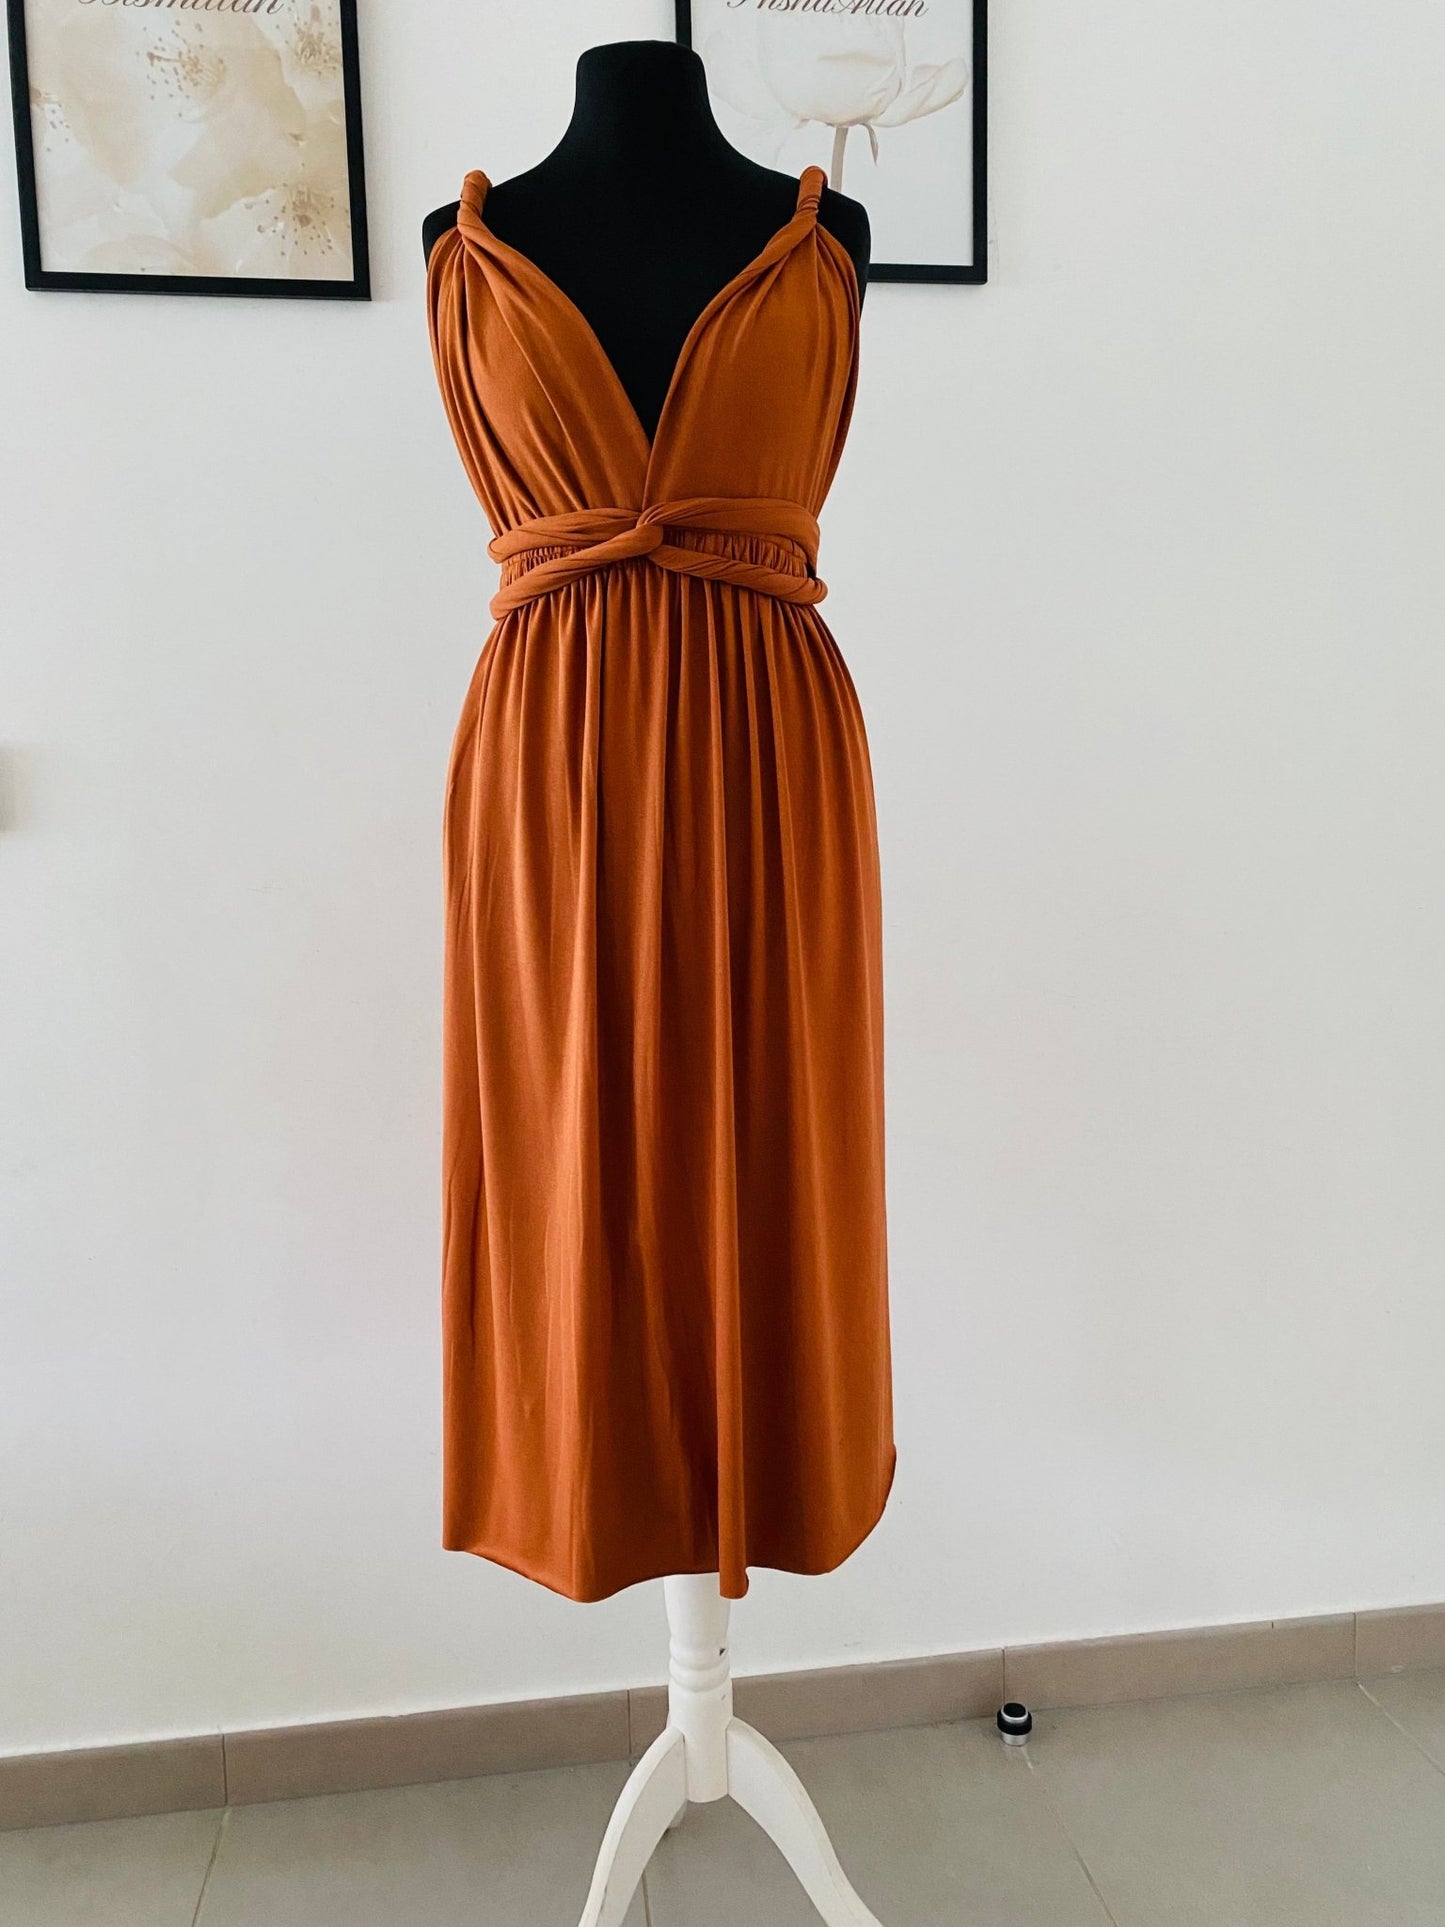 Robe de demoiselle d’honneur rouille - Terracotta - Orange brûlée - Kaysol Couture